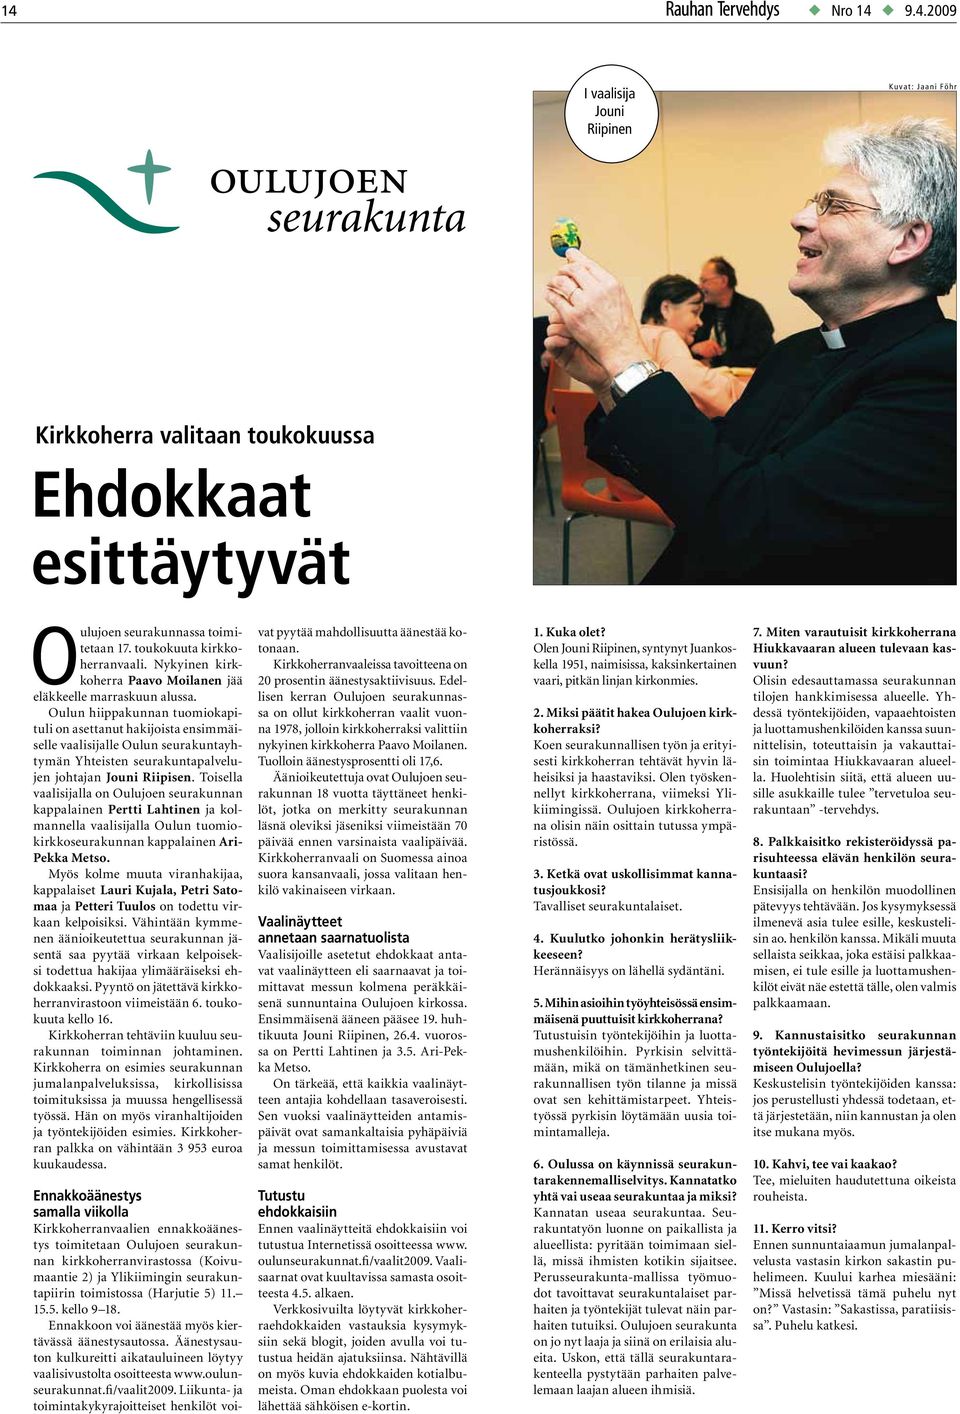 Oulun hiippakunnan tuomiokapituli on asettanut hakijoista ensimmäiselle vaalisille Oulun seurakuntayhtymän Yhteisten seurakuntapalvelujen johtan Jouni Riipisen.